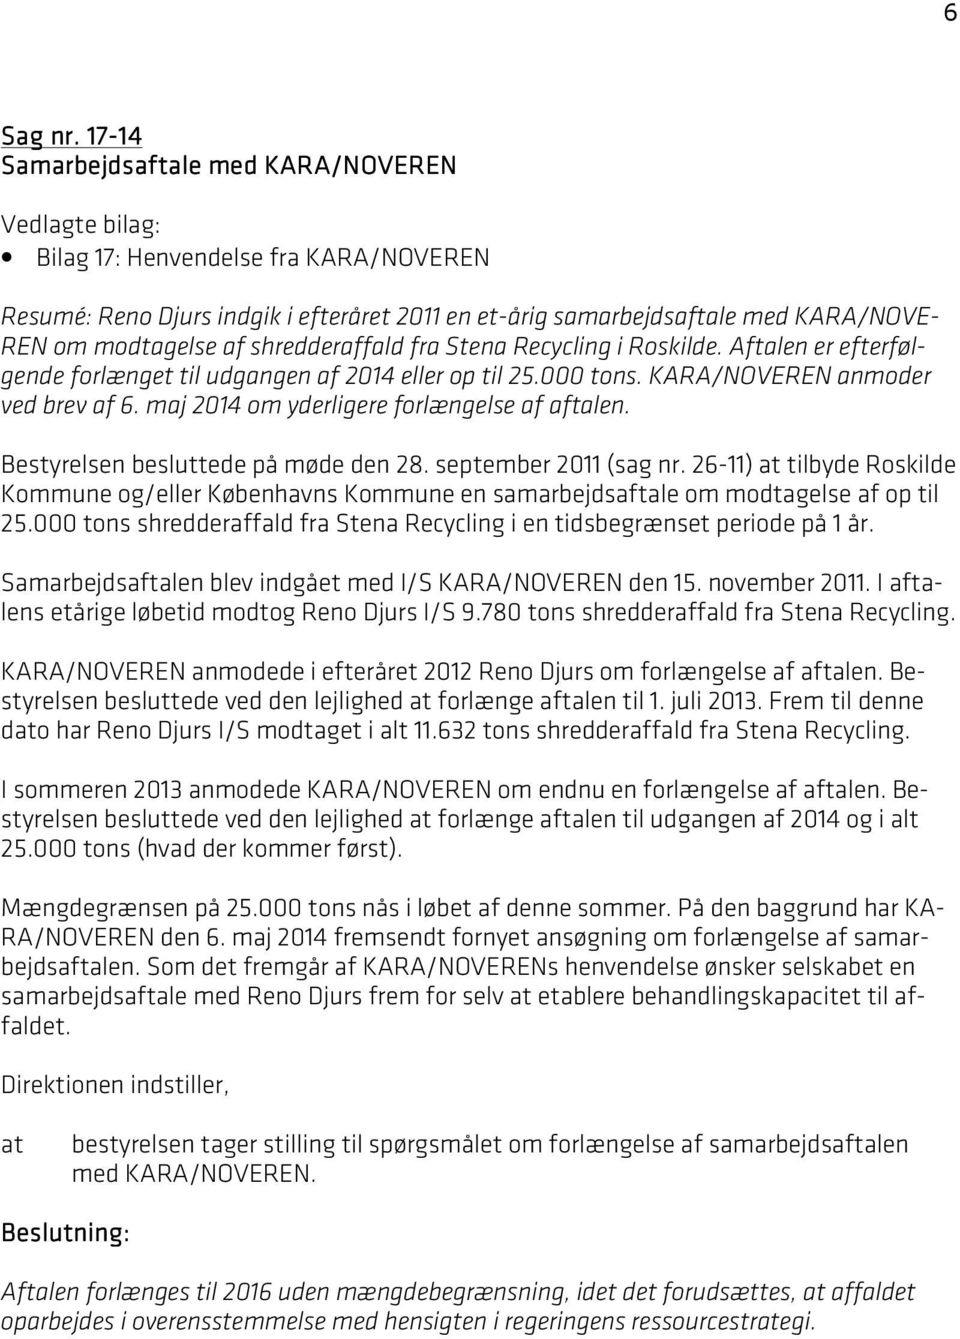 shredderaffald fra Stena Recycling i Roskilde. Aftalen er efterfølgende forlænget til udgangen af 2014 eller op til 25.000 tons. KARA/NOVEREN anmoder ved brev af 6.